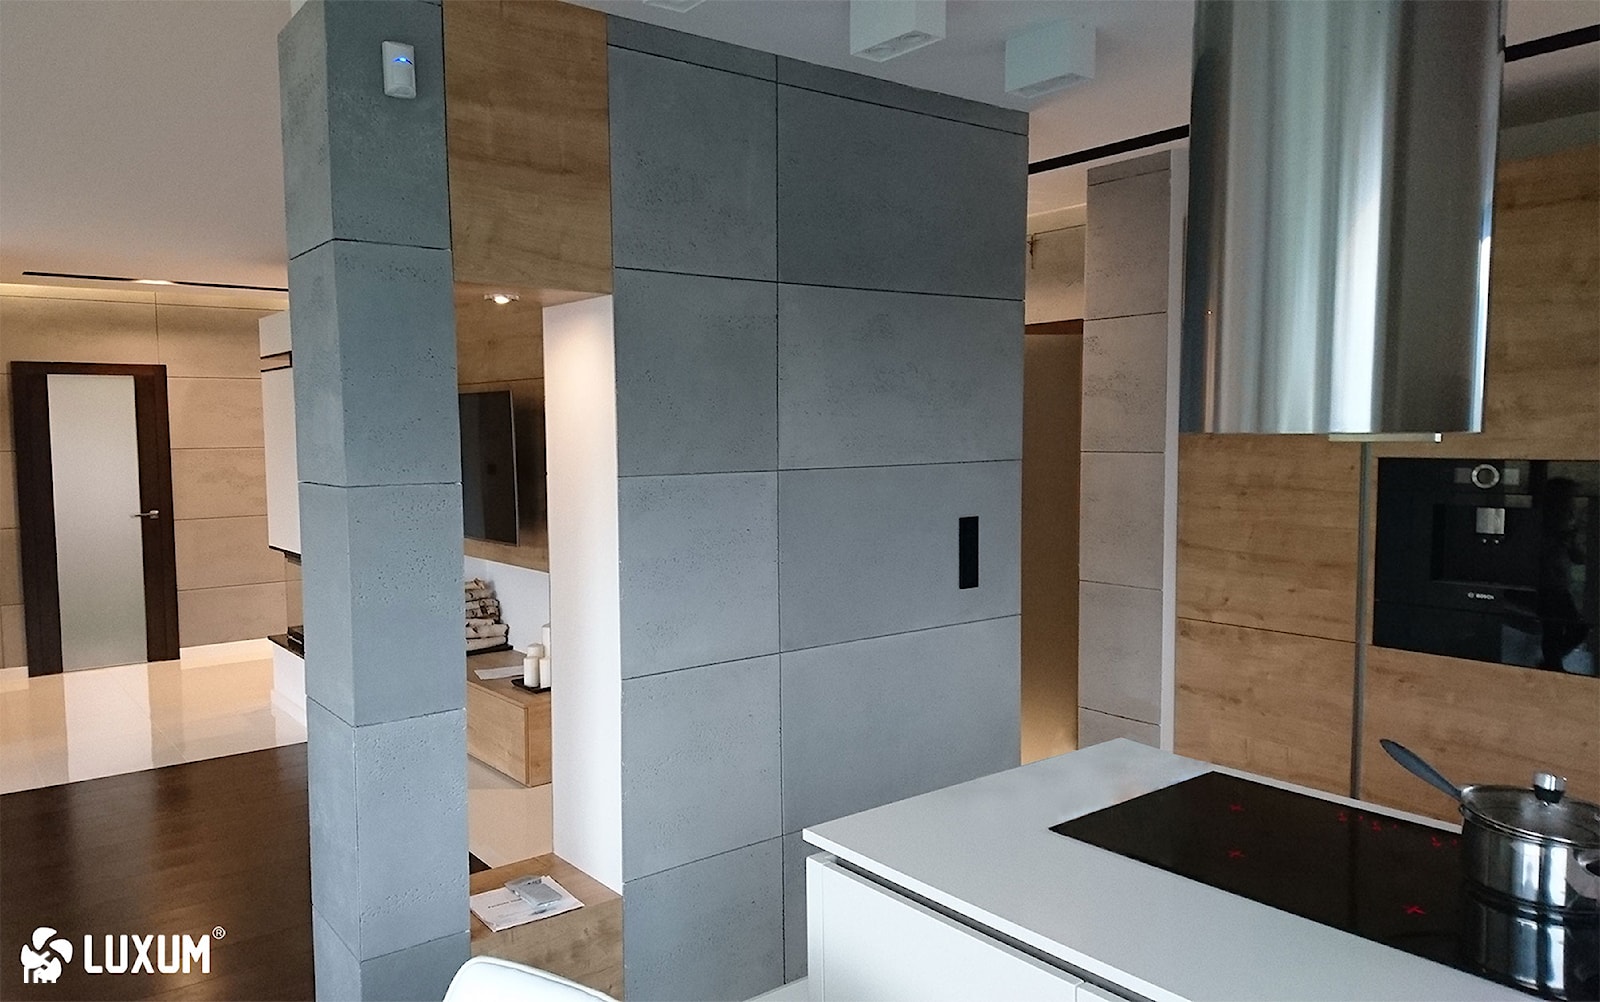 Designerskie mieszkanie z okładziną z betonu architektonicznego. - Kuchnia, styl nowoczesny - zdjęcie od Luxum - Homebook